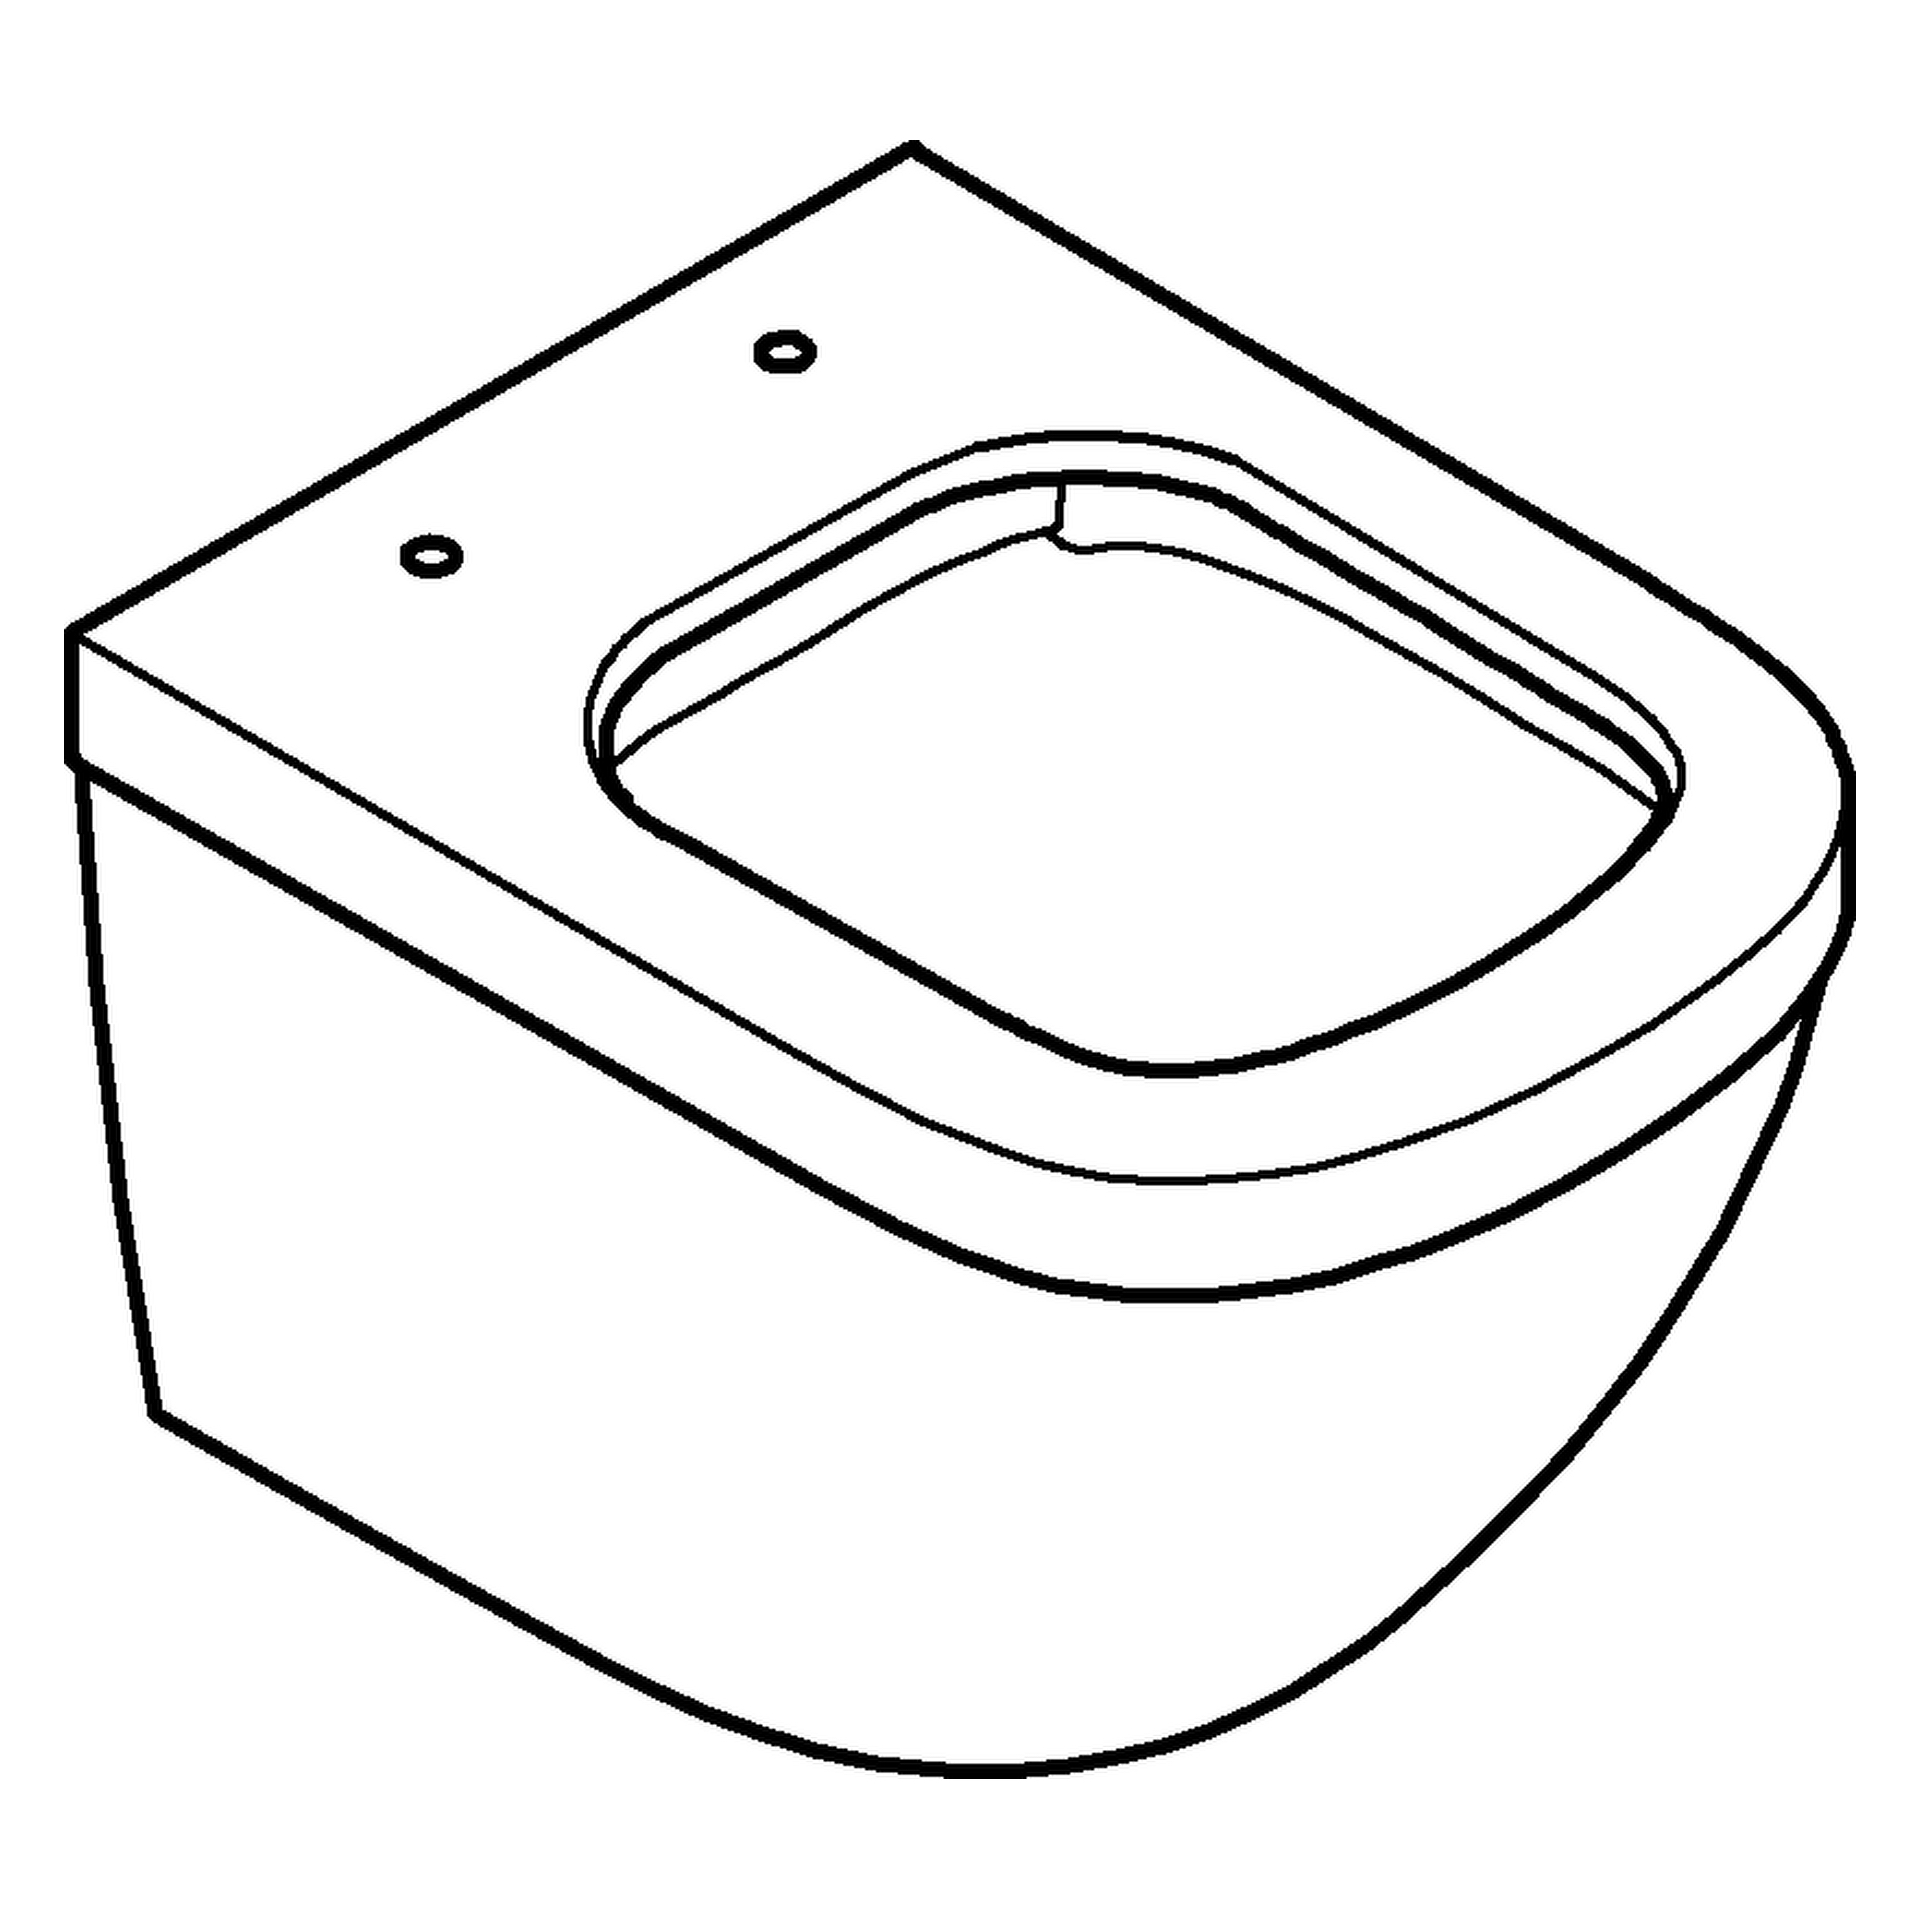 Wand-Tiefspül-WC Euro Keramik 39206, Ausladung 49 cm, Abgang waagerecht, spülrandlos, für Unterputz-Spülkasten, aus Sanitärkeramik, alpinweiß